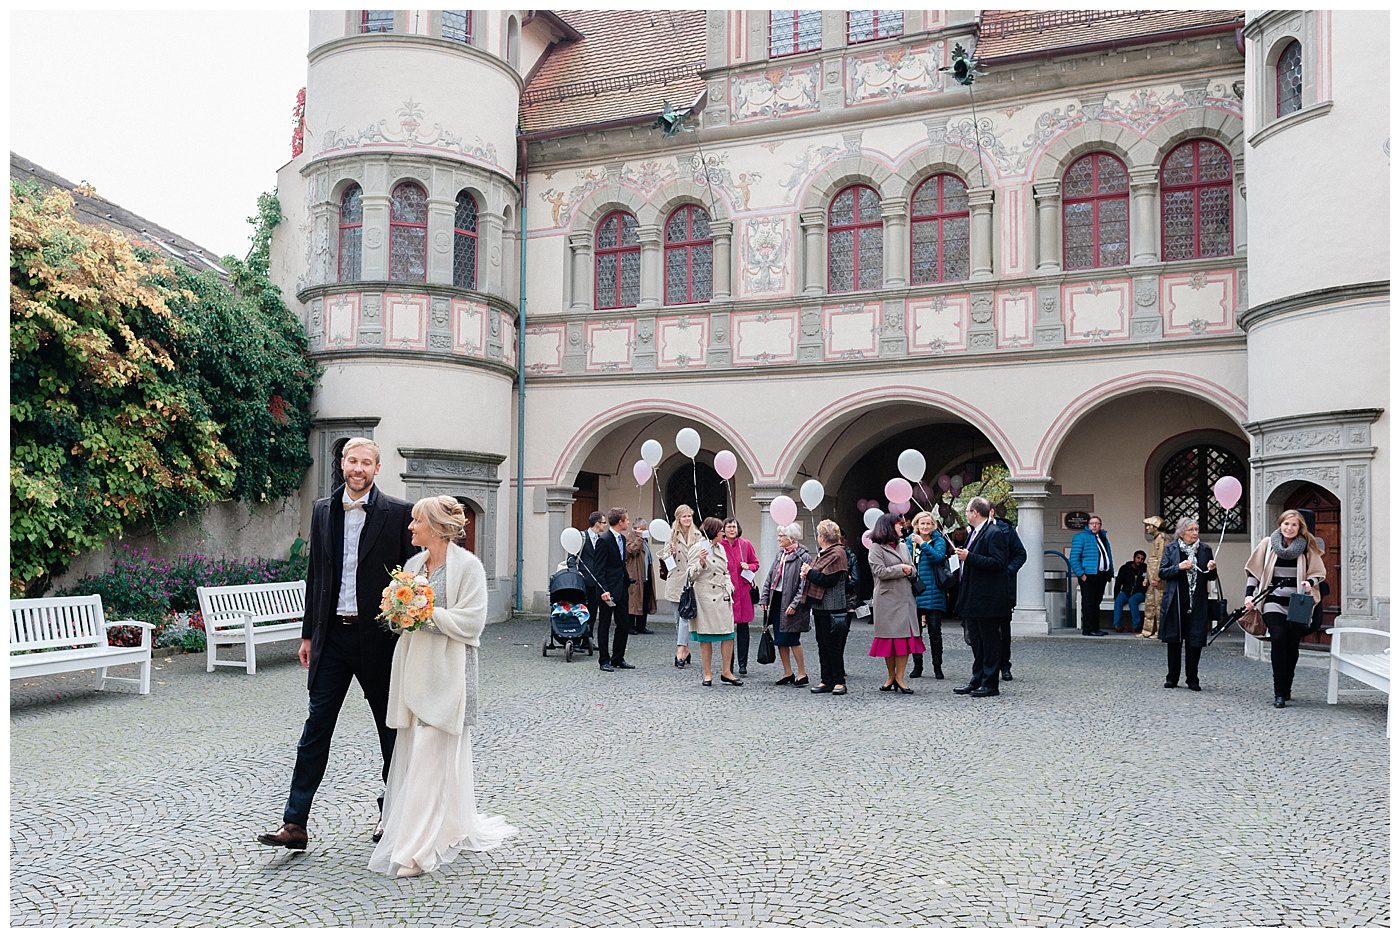 Hochzeitsfotograf vom Bodensee 36 Hochzeit in Konstanz, im historischen Rathaus